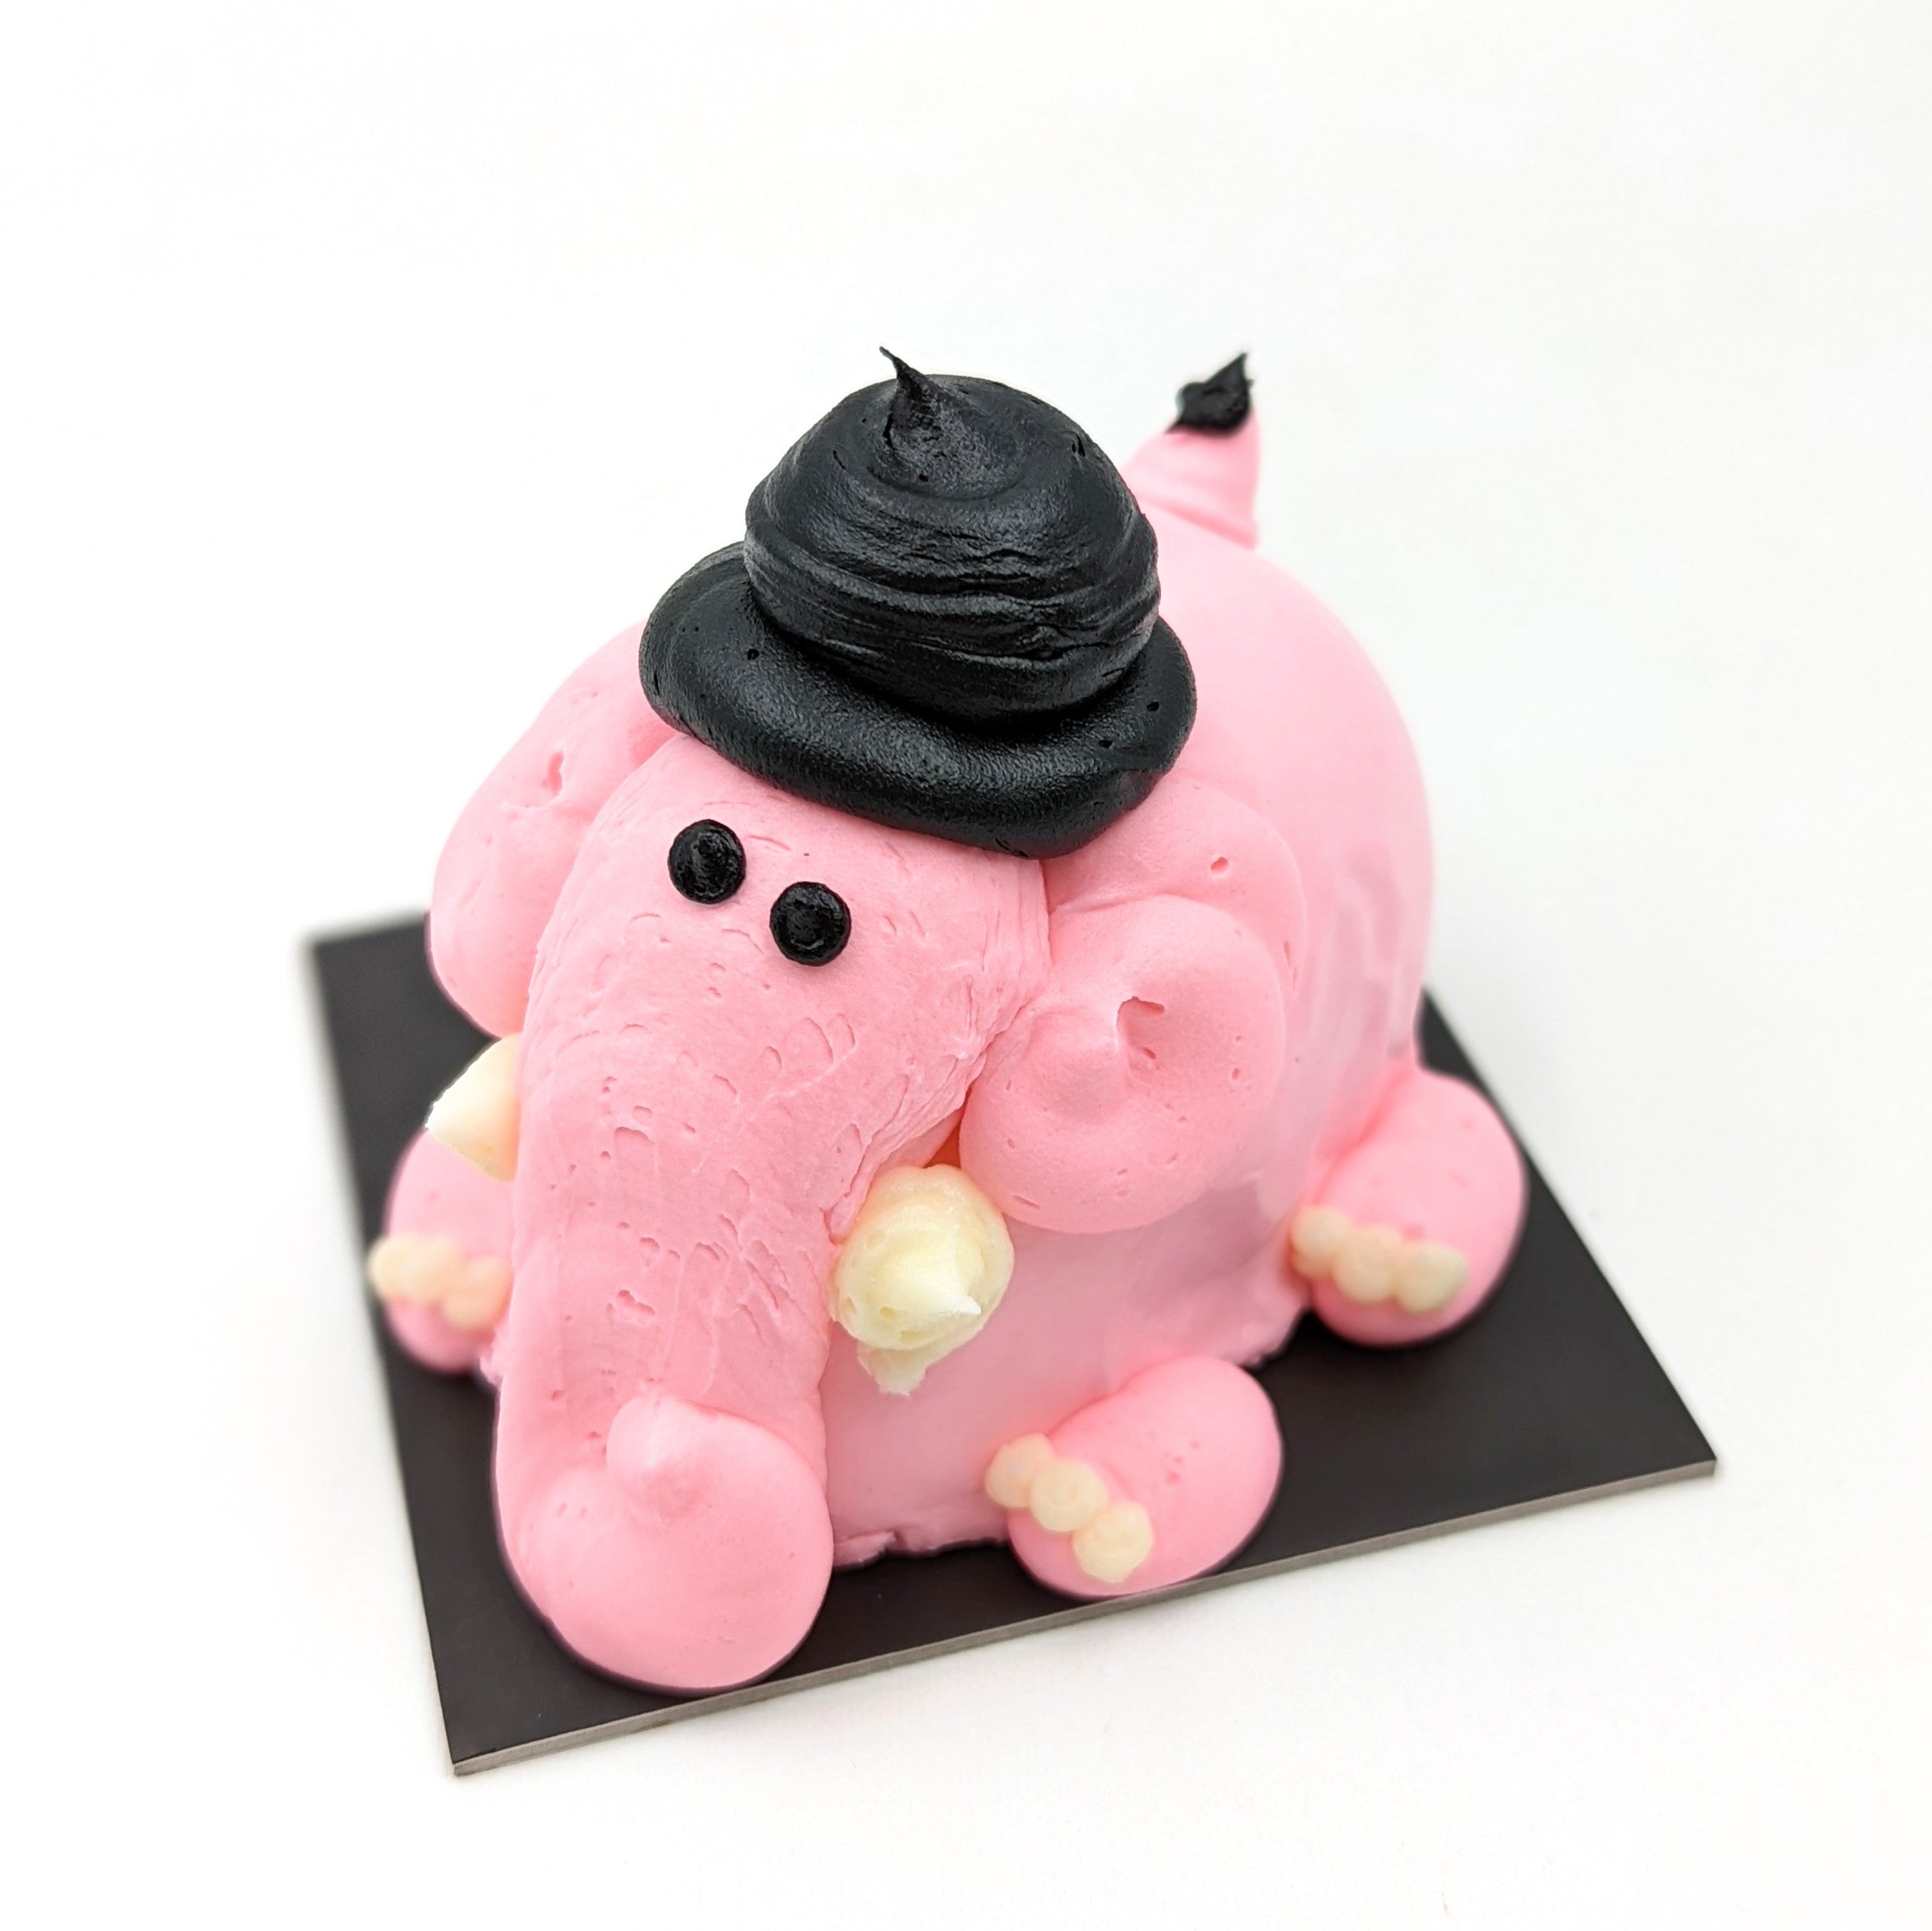 Elephant Cake for Baby Girl | Elephant Cake | jungle Cake | Yummy Cake